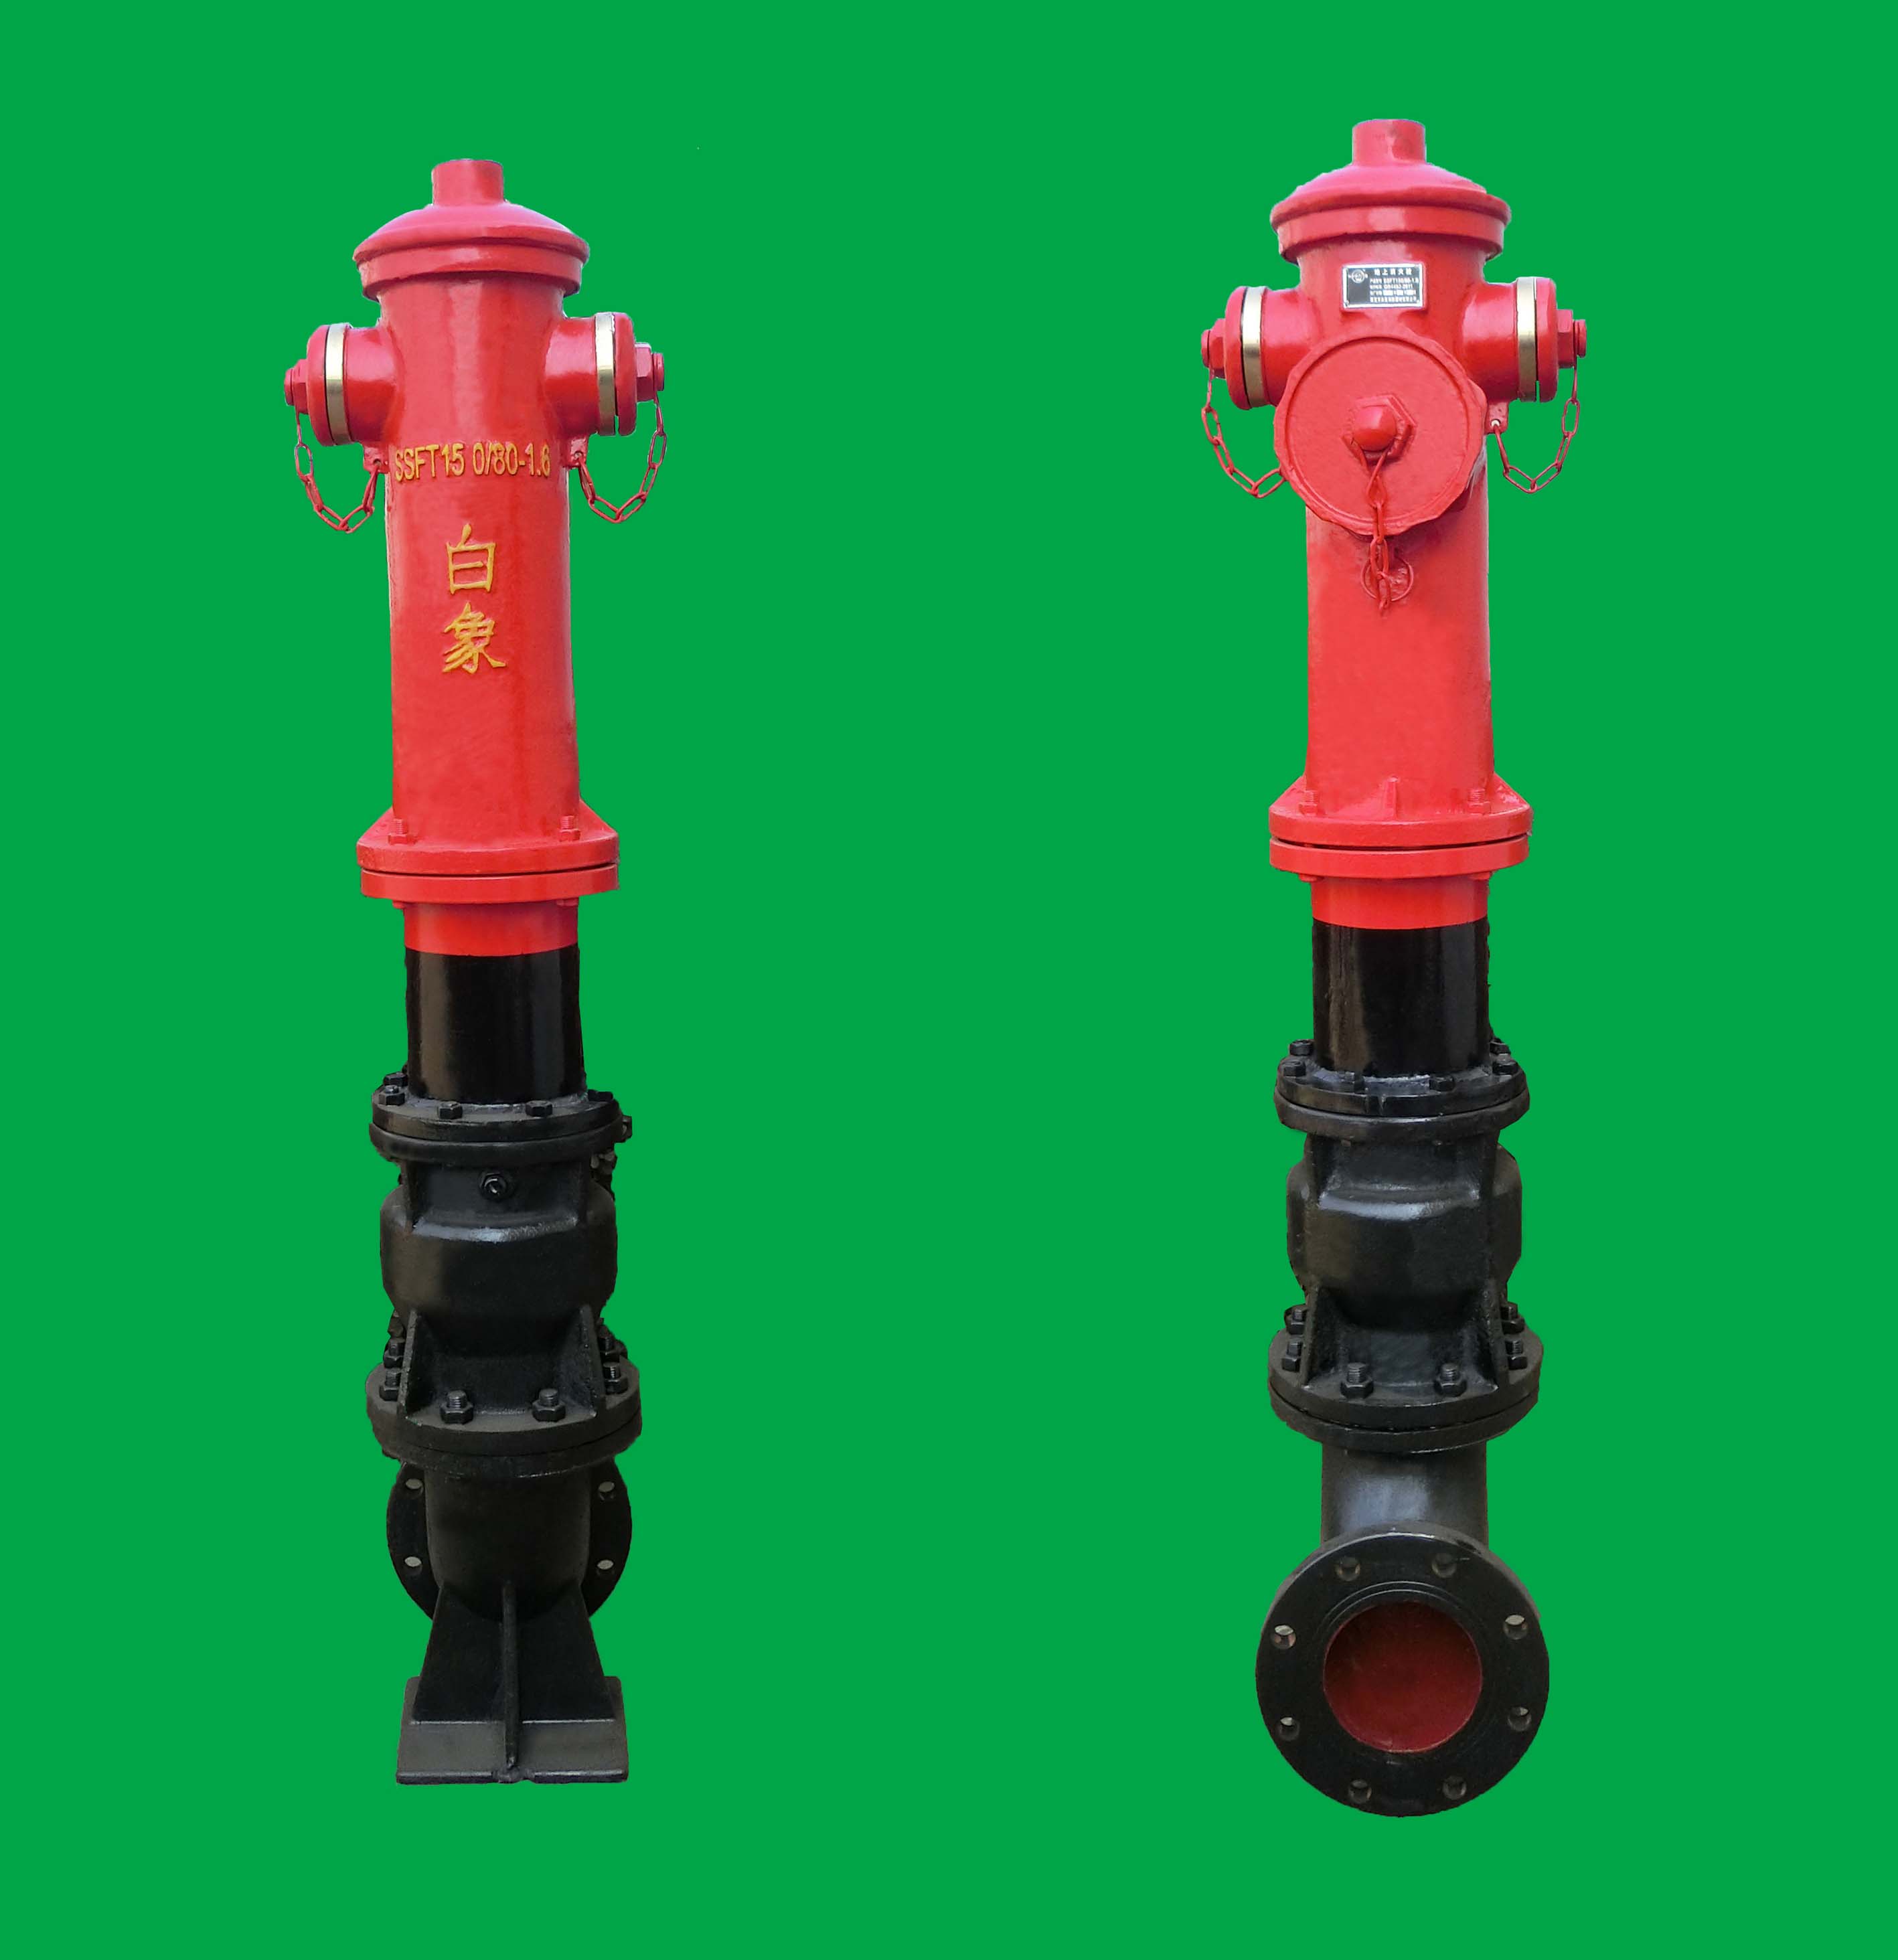 濰坊防撞調壓型室外消火栓SSFT150/80型